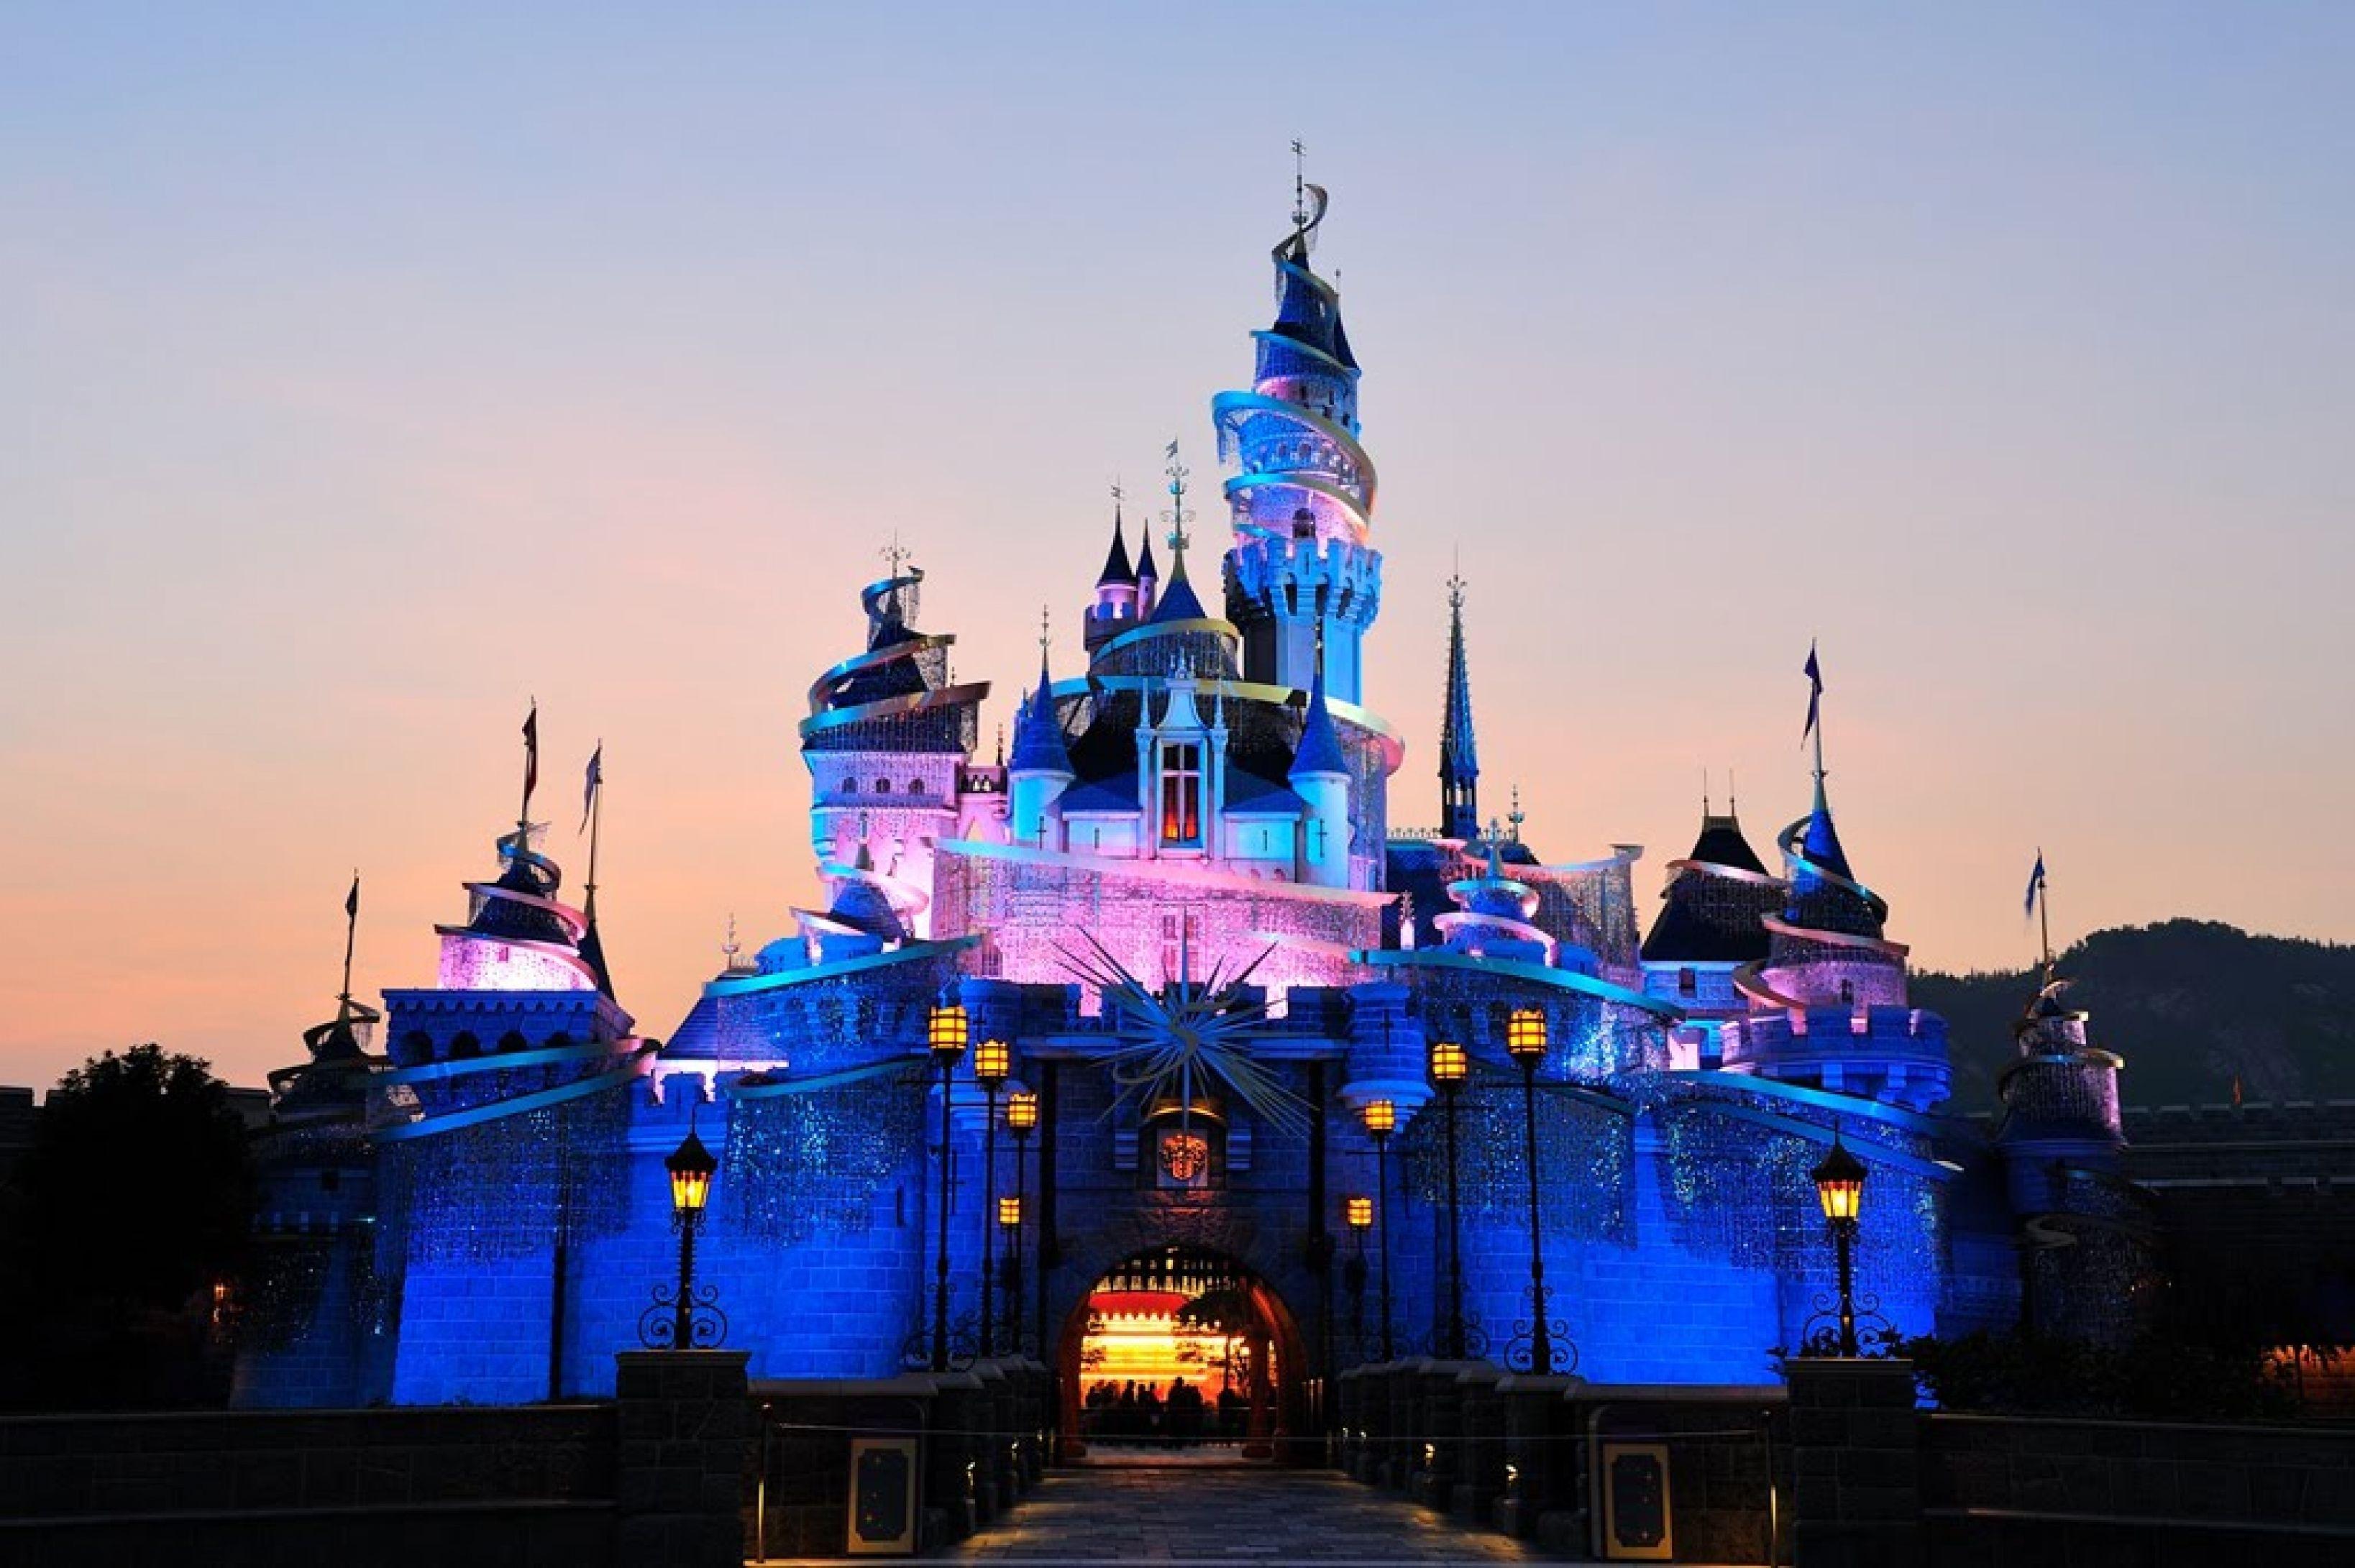 Nếu bạn muốn có một hình nền hoàn hảo, không gì tuyệt vời hơn đến với Hong Kong Disneyland, wallpapers! Bạn sẽ được truyền cảm hứng bởi cảnh quan và những kỷ niệm tuyệt vời tại công viên. Hãy cùng chúng tôi khám phá những bức ảnh đẹp, mang sự phép thuật và mơ mộng đến cho bạn!